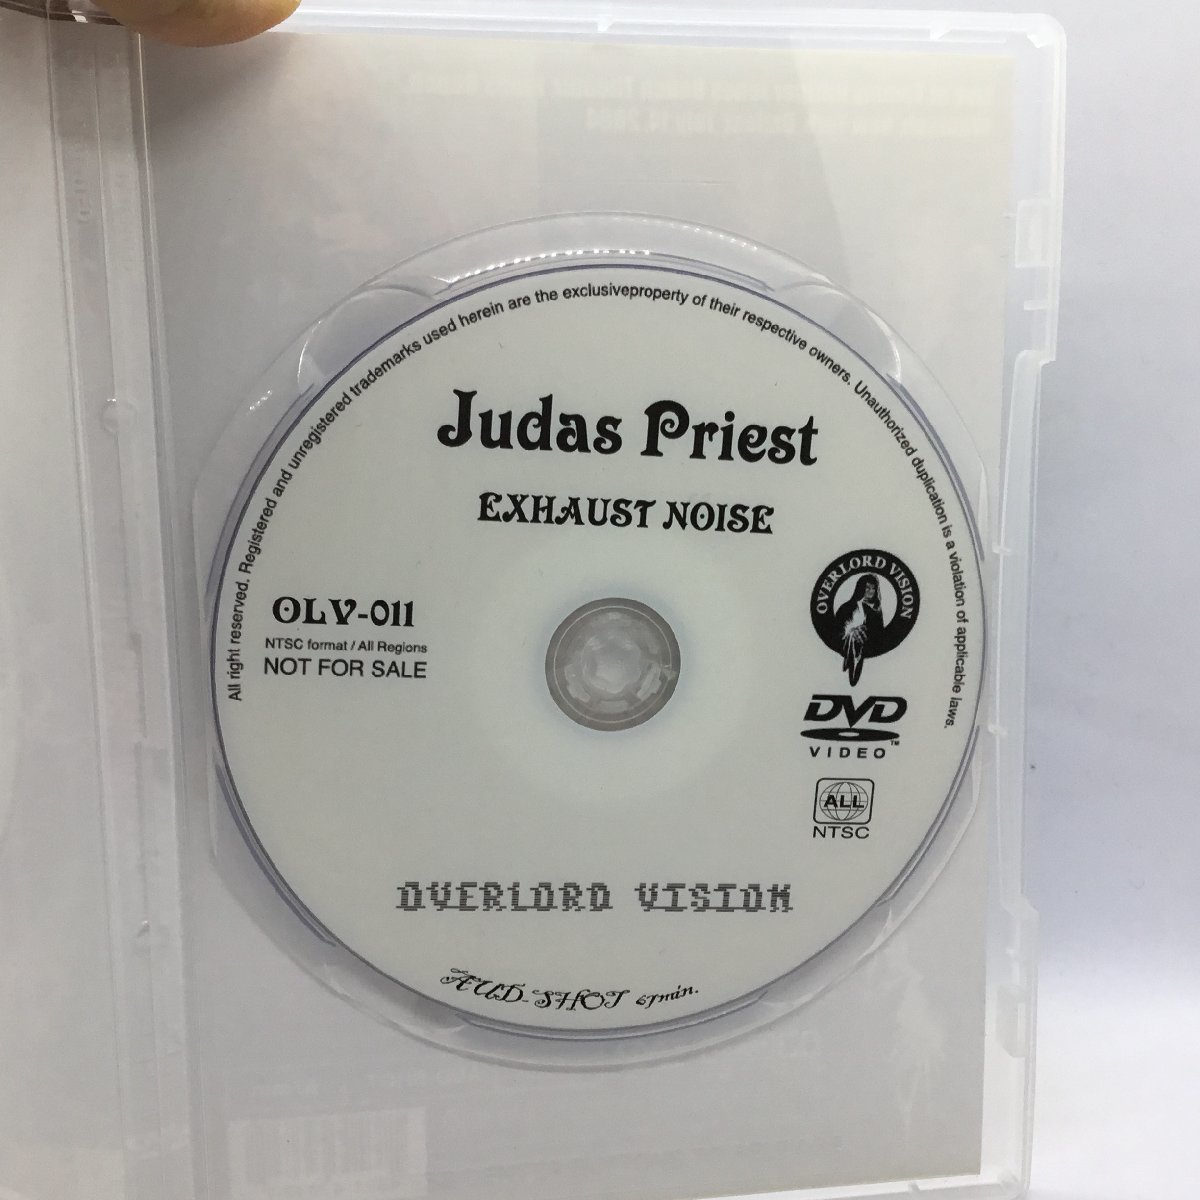 DVD-R ◇ JUDAS PRIEST / EXHAUST NOISE OZZFEST JULY 14, 2004 (DVD-R) OVL-011 ジューダス・プリースト_画像3